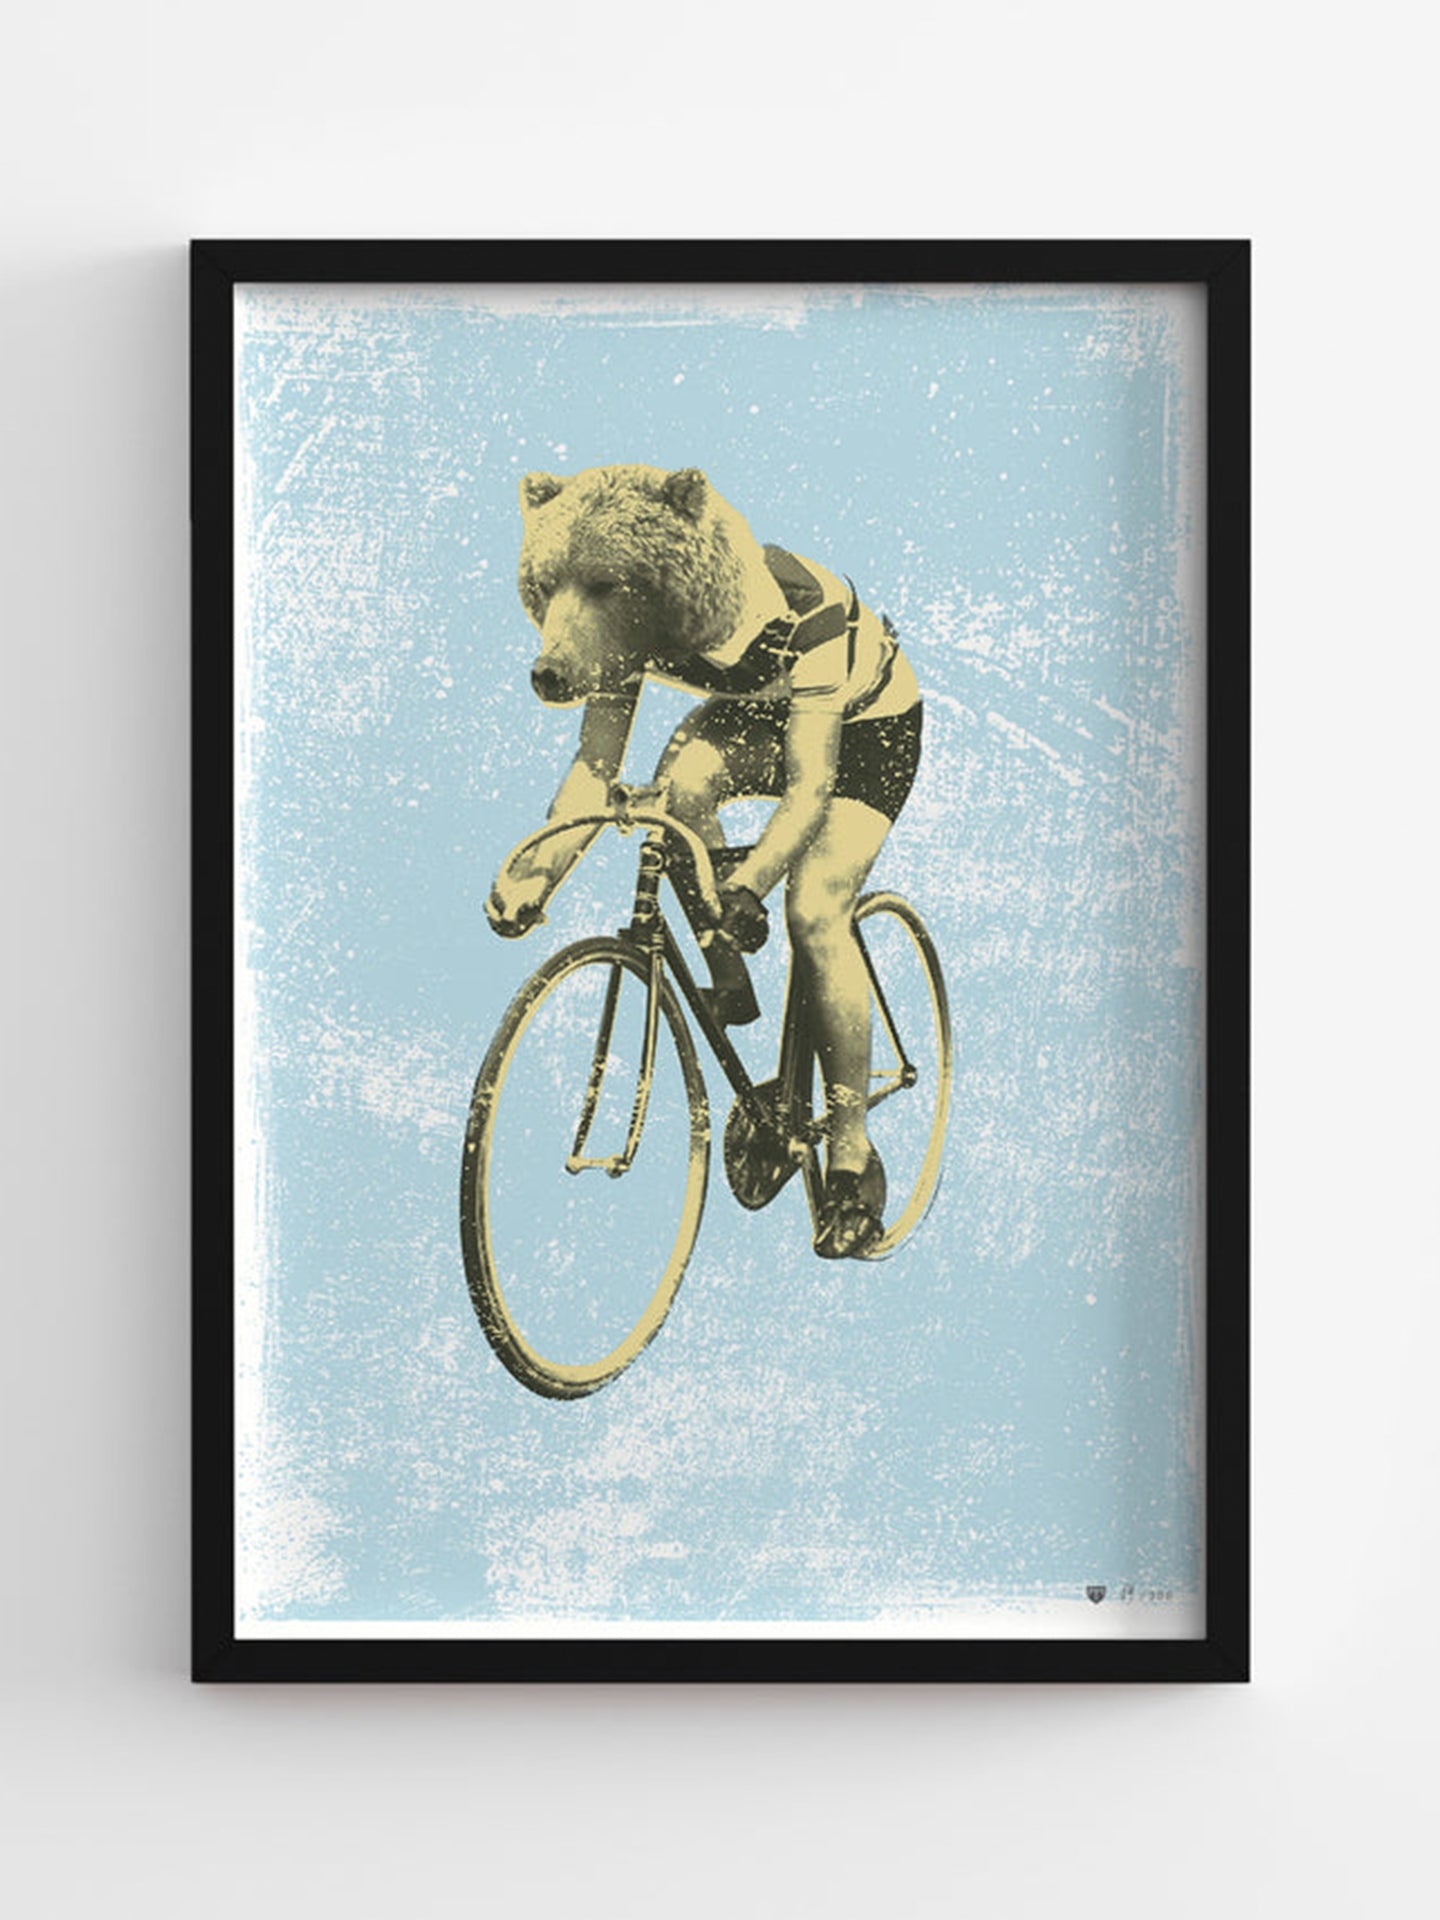 L’ours de la course - Poster - La Machine Cycle Club.